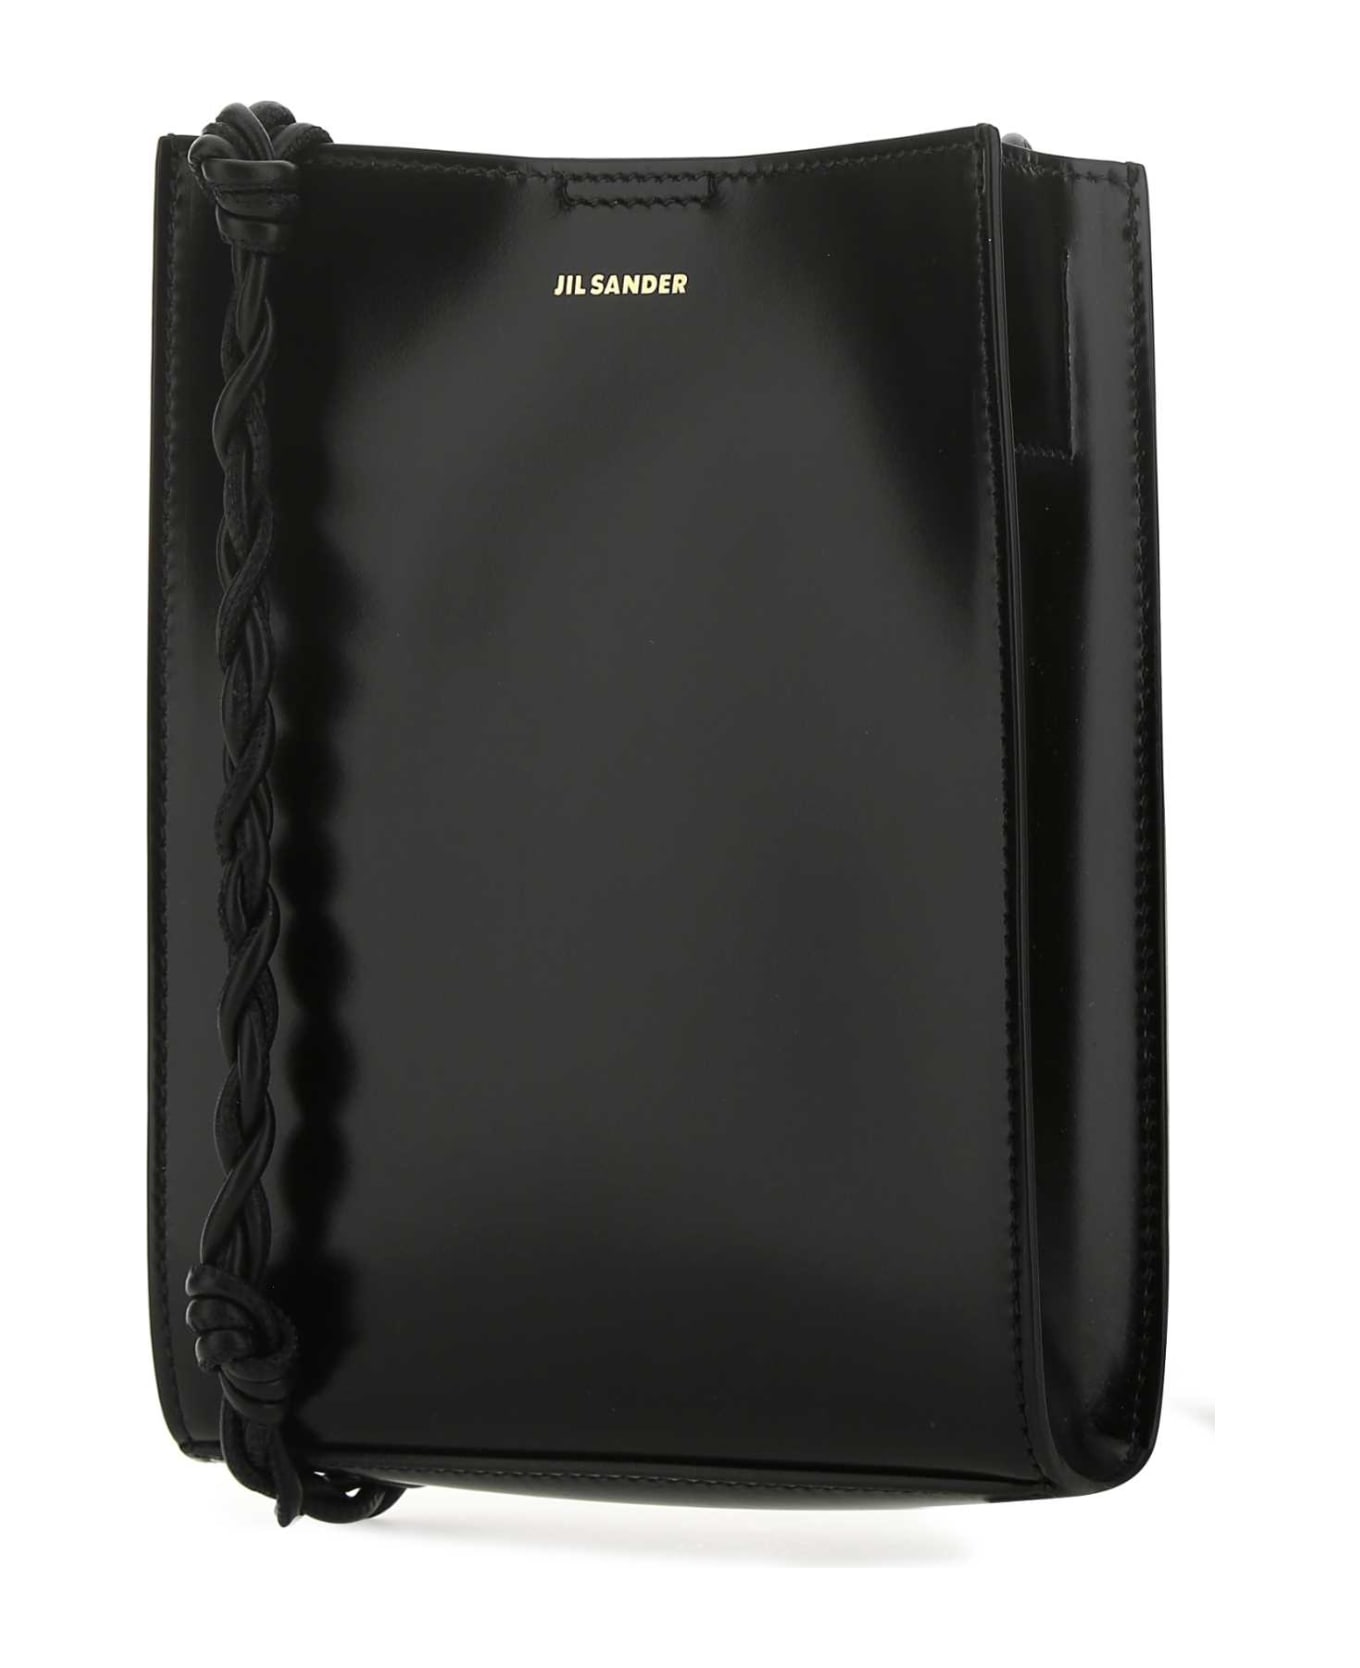 Jil Sander Black Leather Small Tangle Shoulder Bag - 001